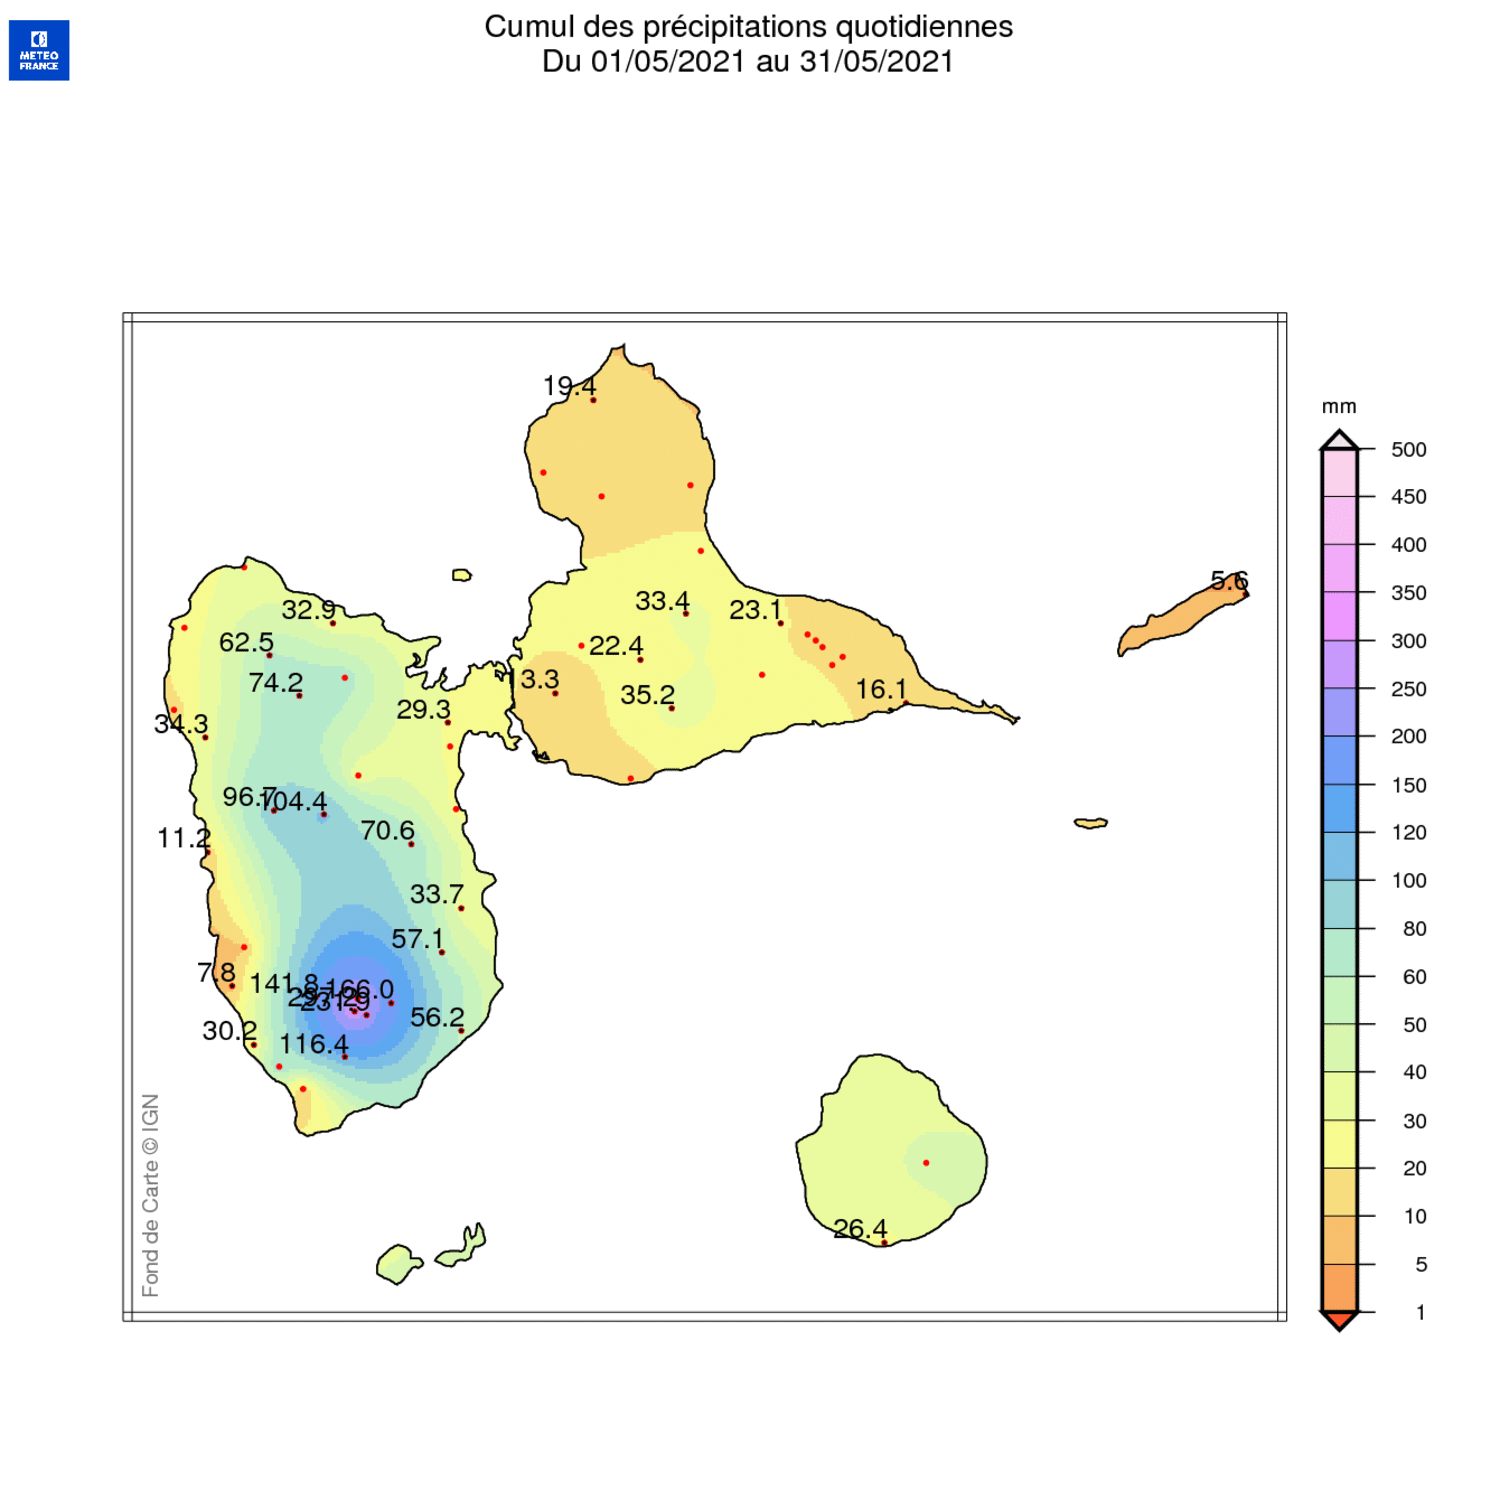 Carte de la pluviométrie et rapport à la normale 1981-2010 sur l'archipel guadeloupéen en mai 2021